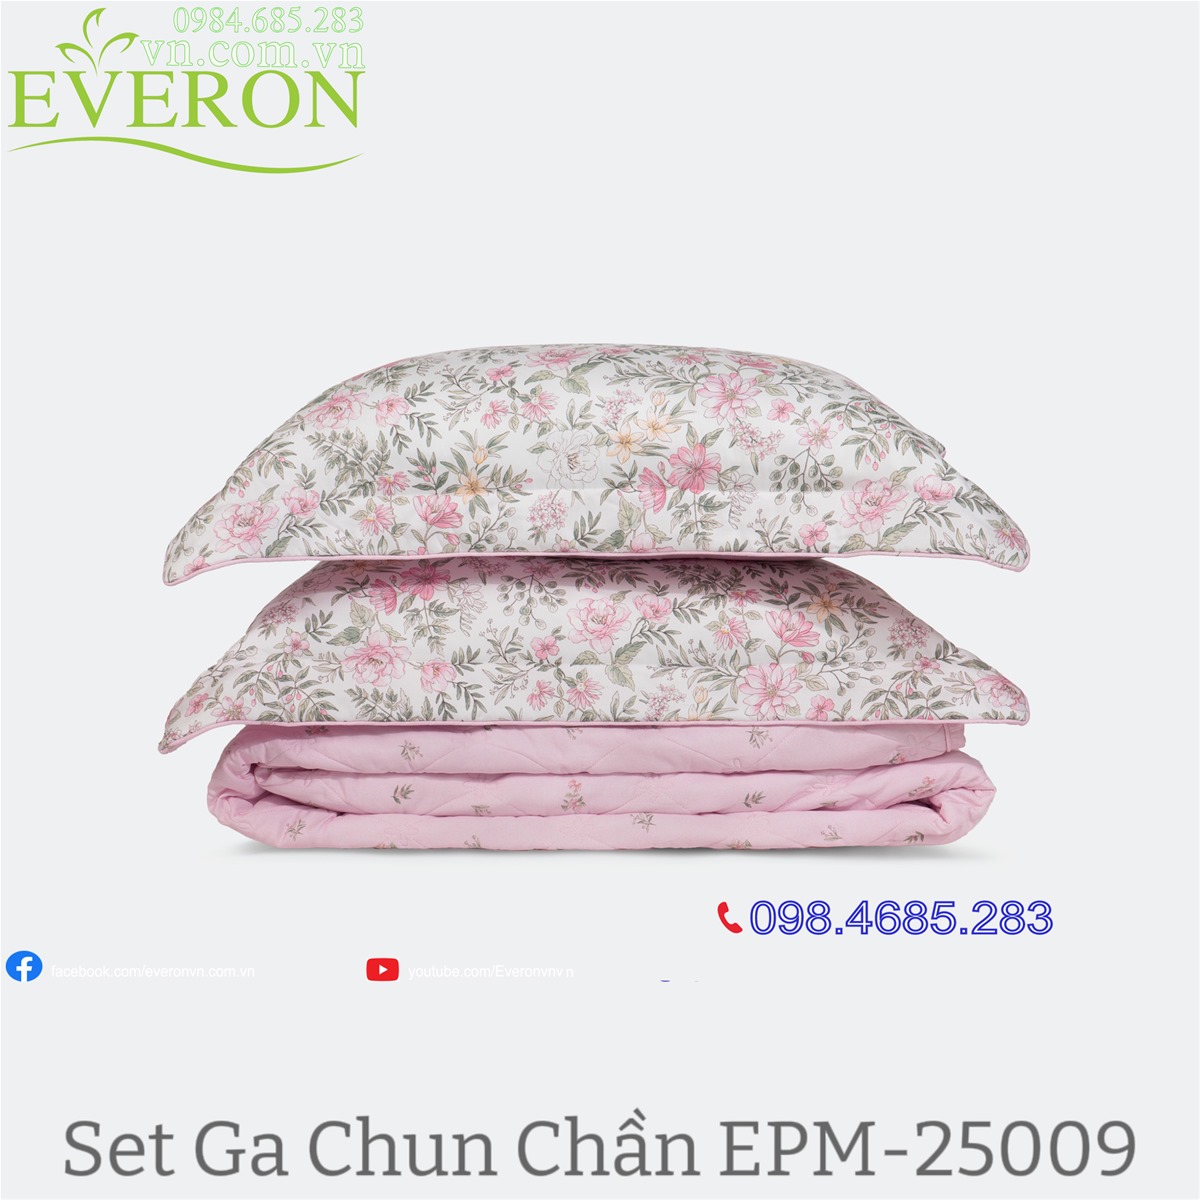 bộ ga chần chăn ga gối Everon EPM-25009